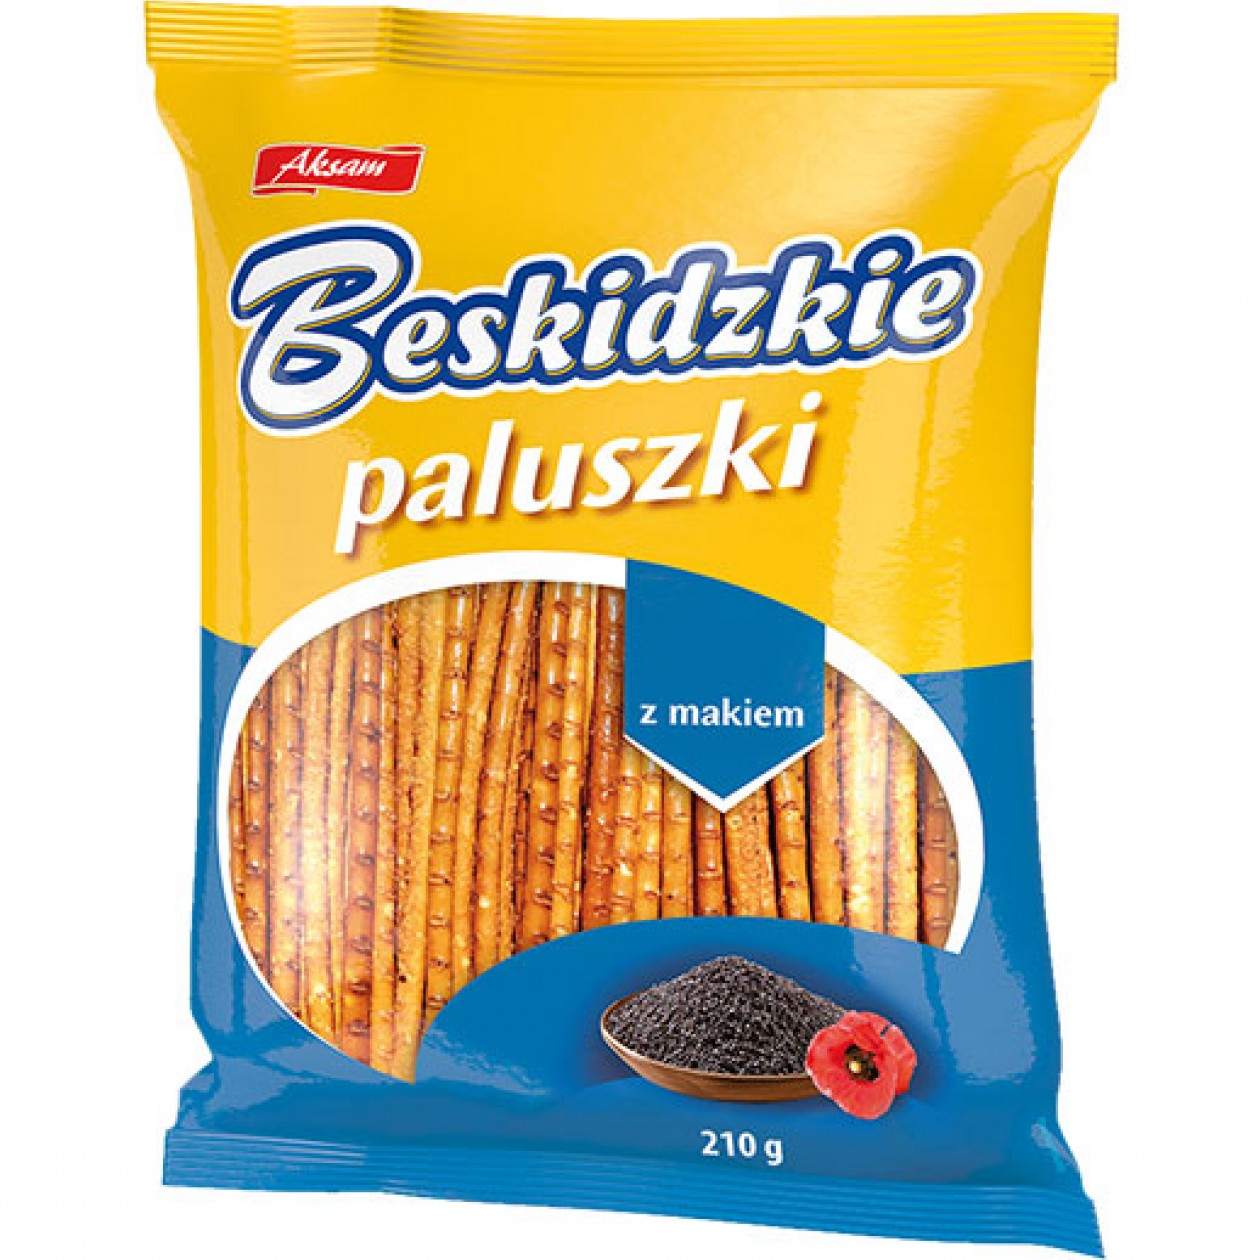 Aksam Beskidzkie Paluszki Poppy-seed Sticks (Z Makiem) 8x210g